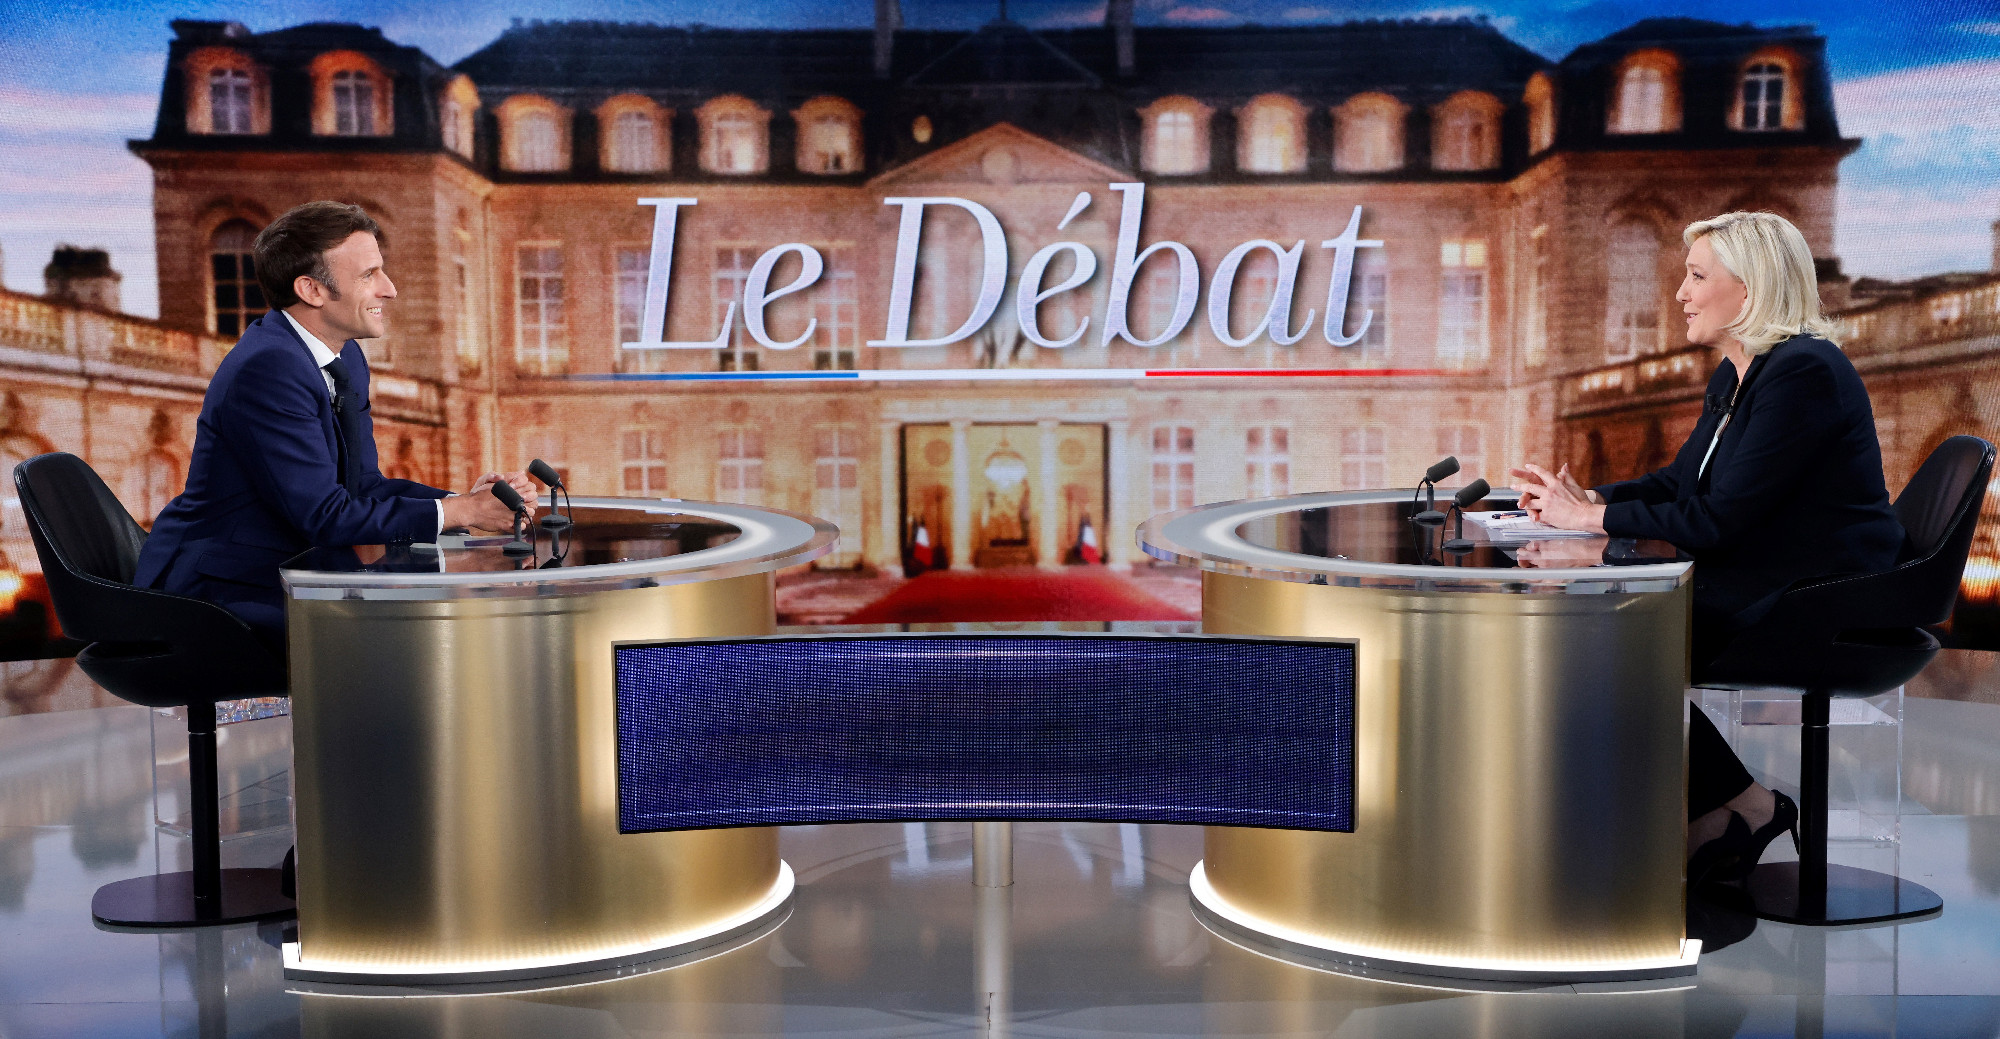 Macron jóval meggyőzőbb volt a Le Pennel folytatott tévévitán a nézők szerint